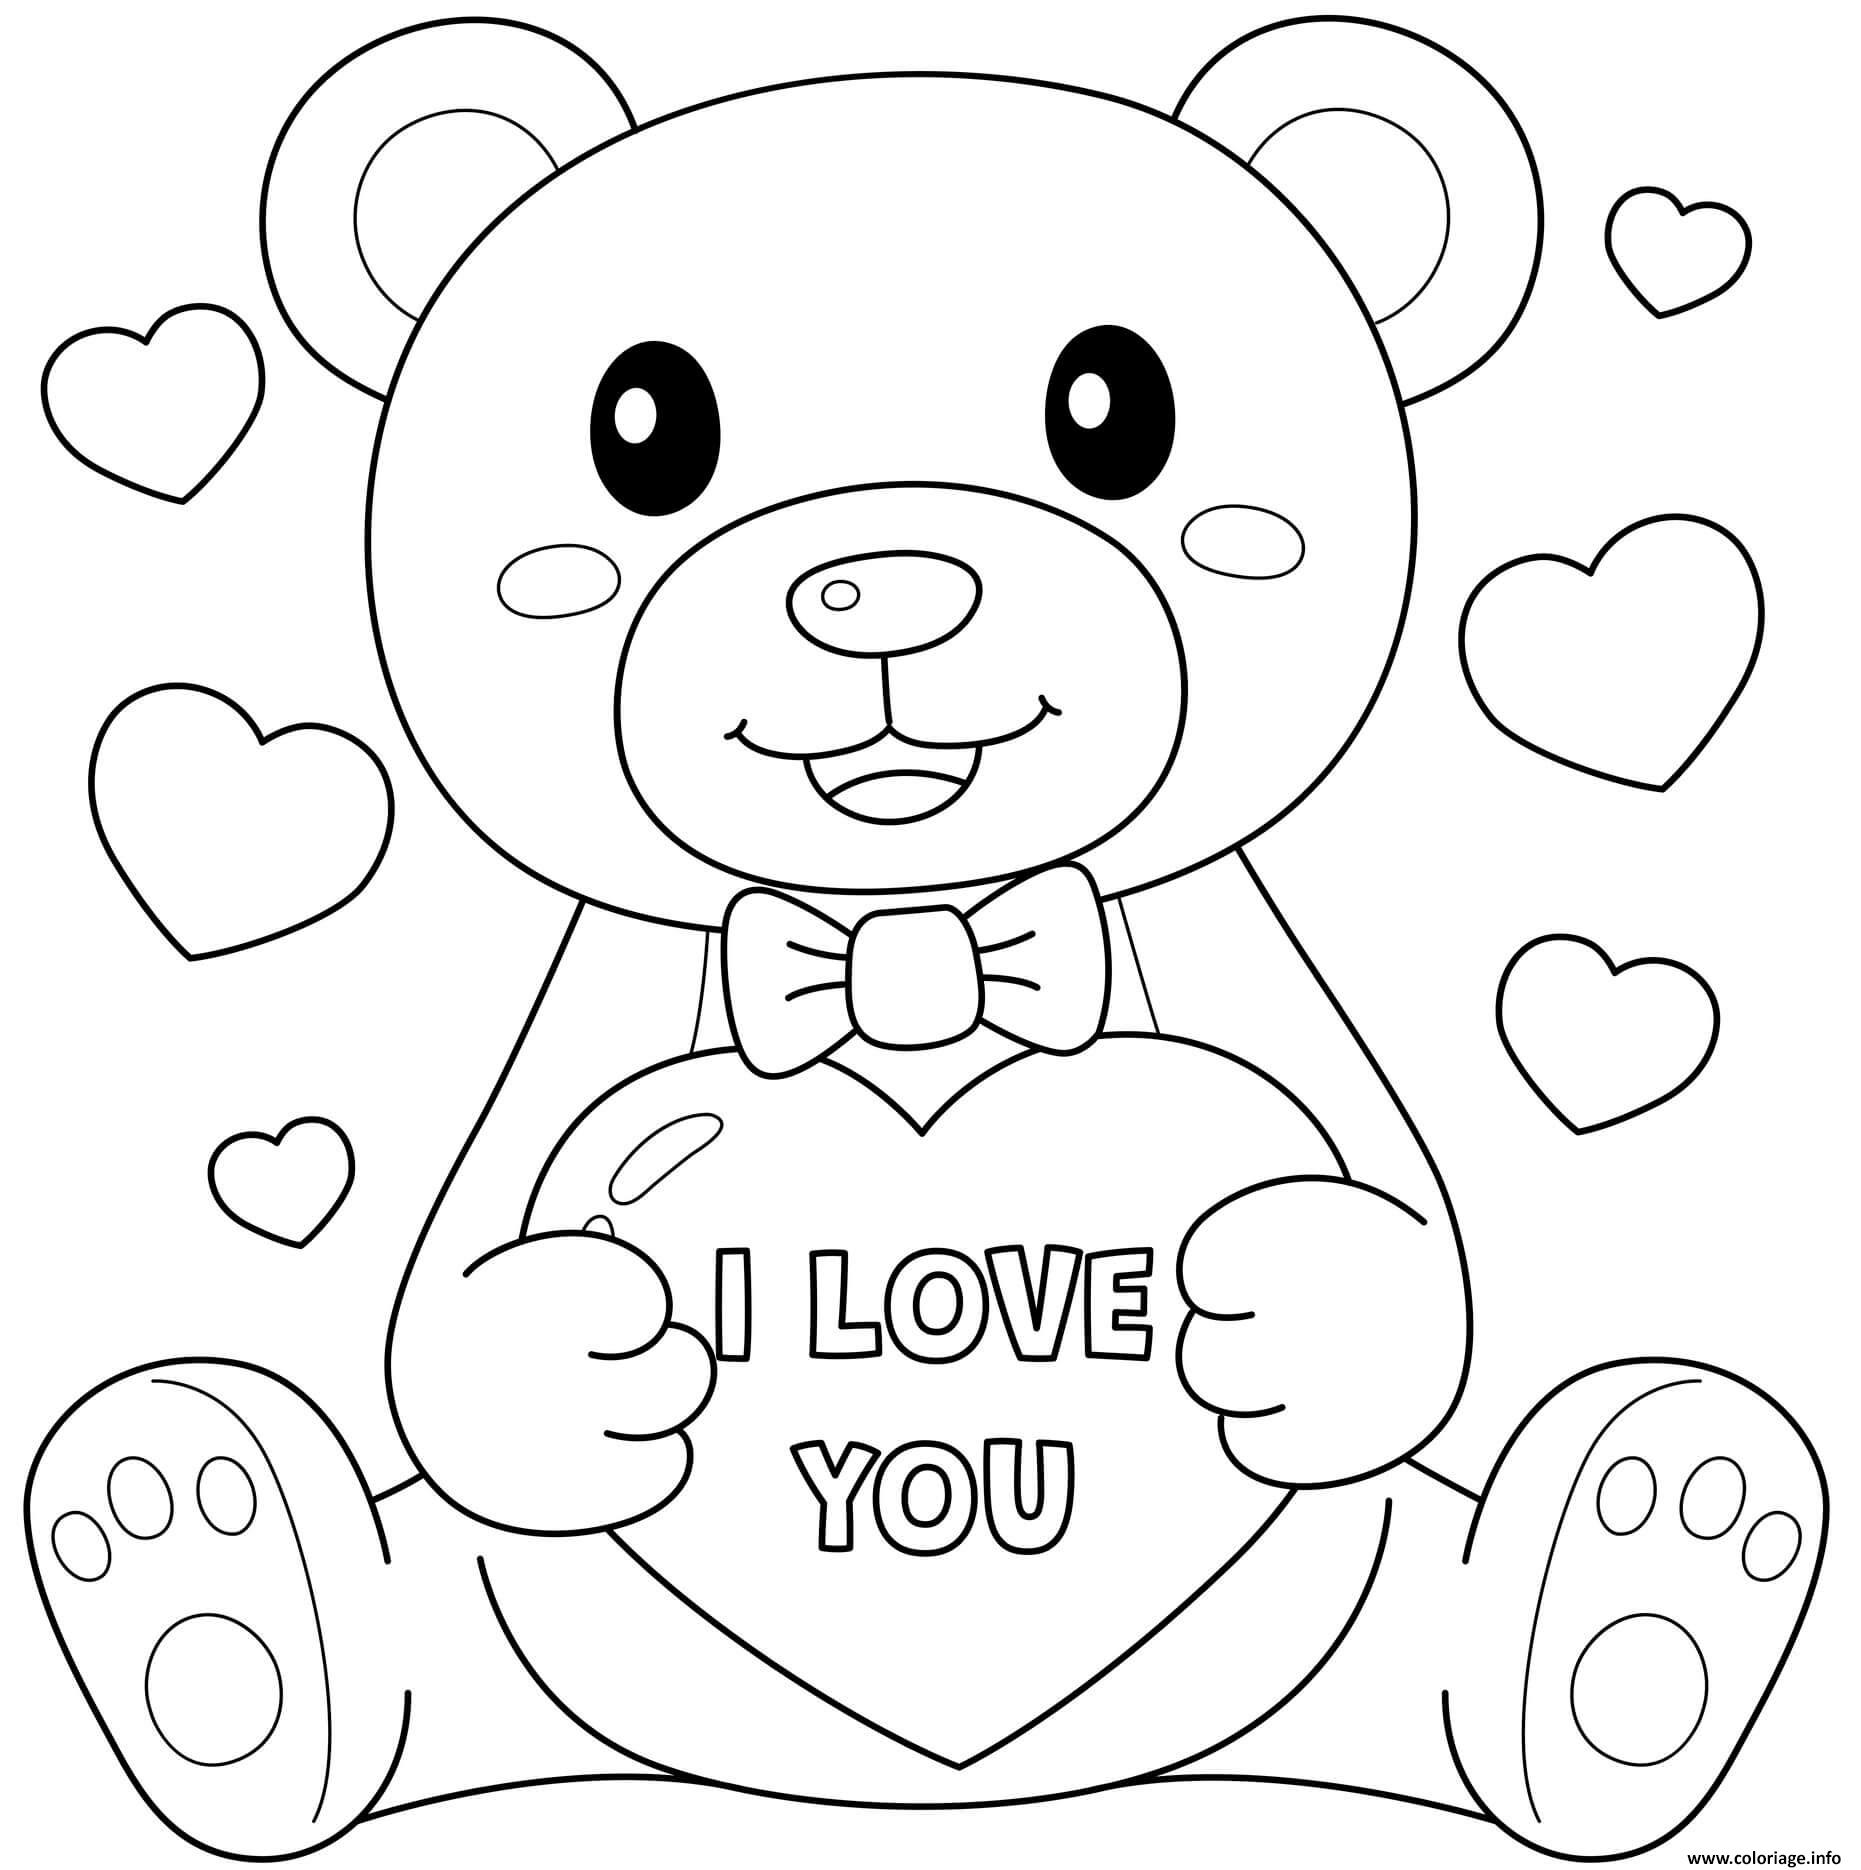 Dessin teddy bear i love you fevrier Coloriage Gratuit à Imprimer